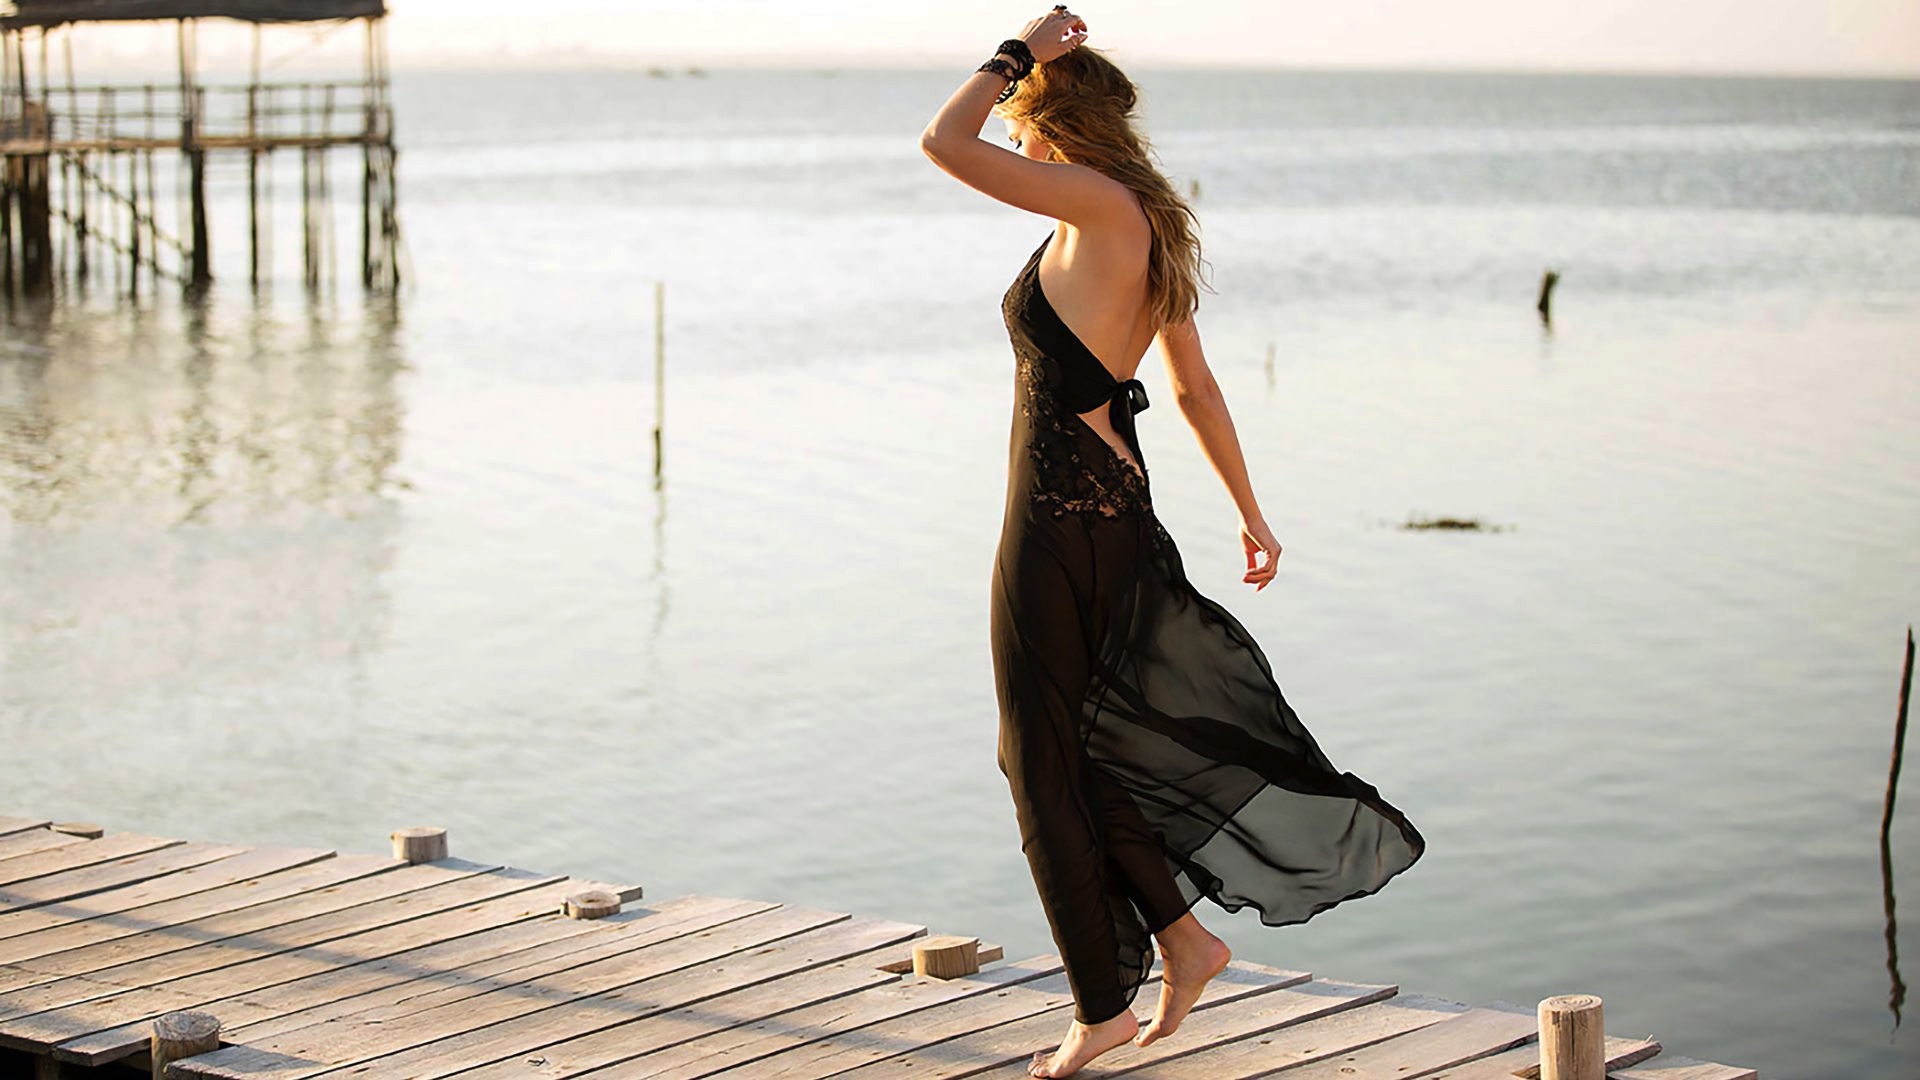 Wallpaper Agathe Teyssier, girl model, black dress